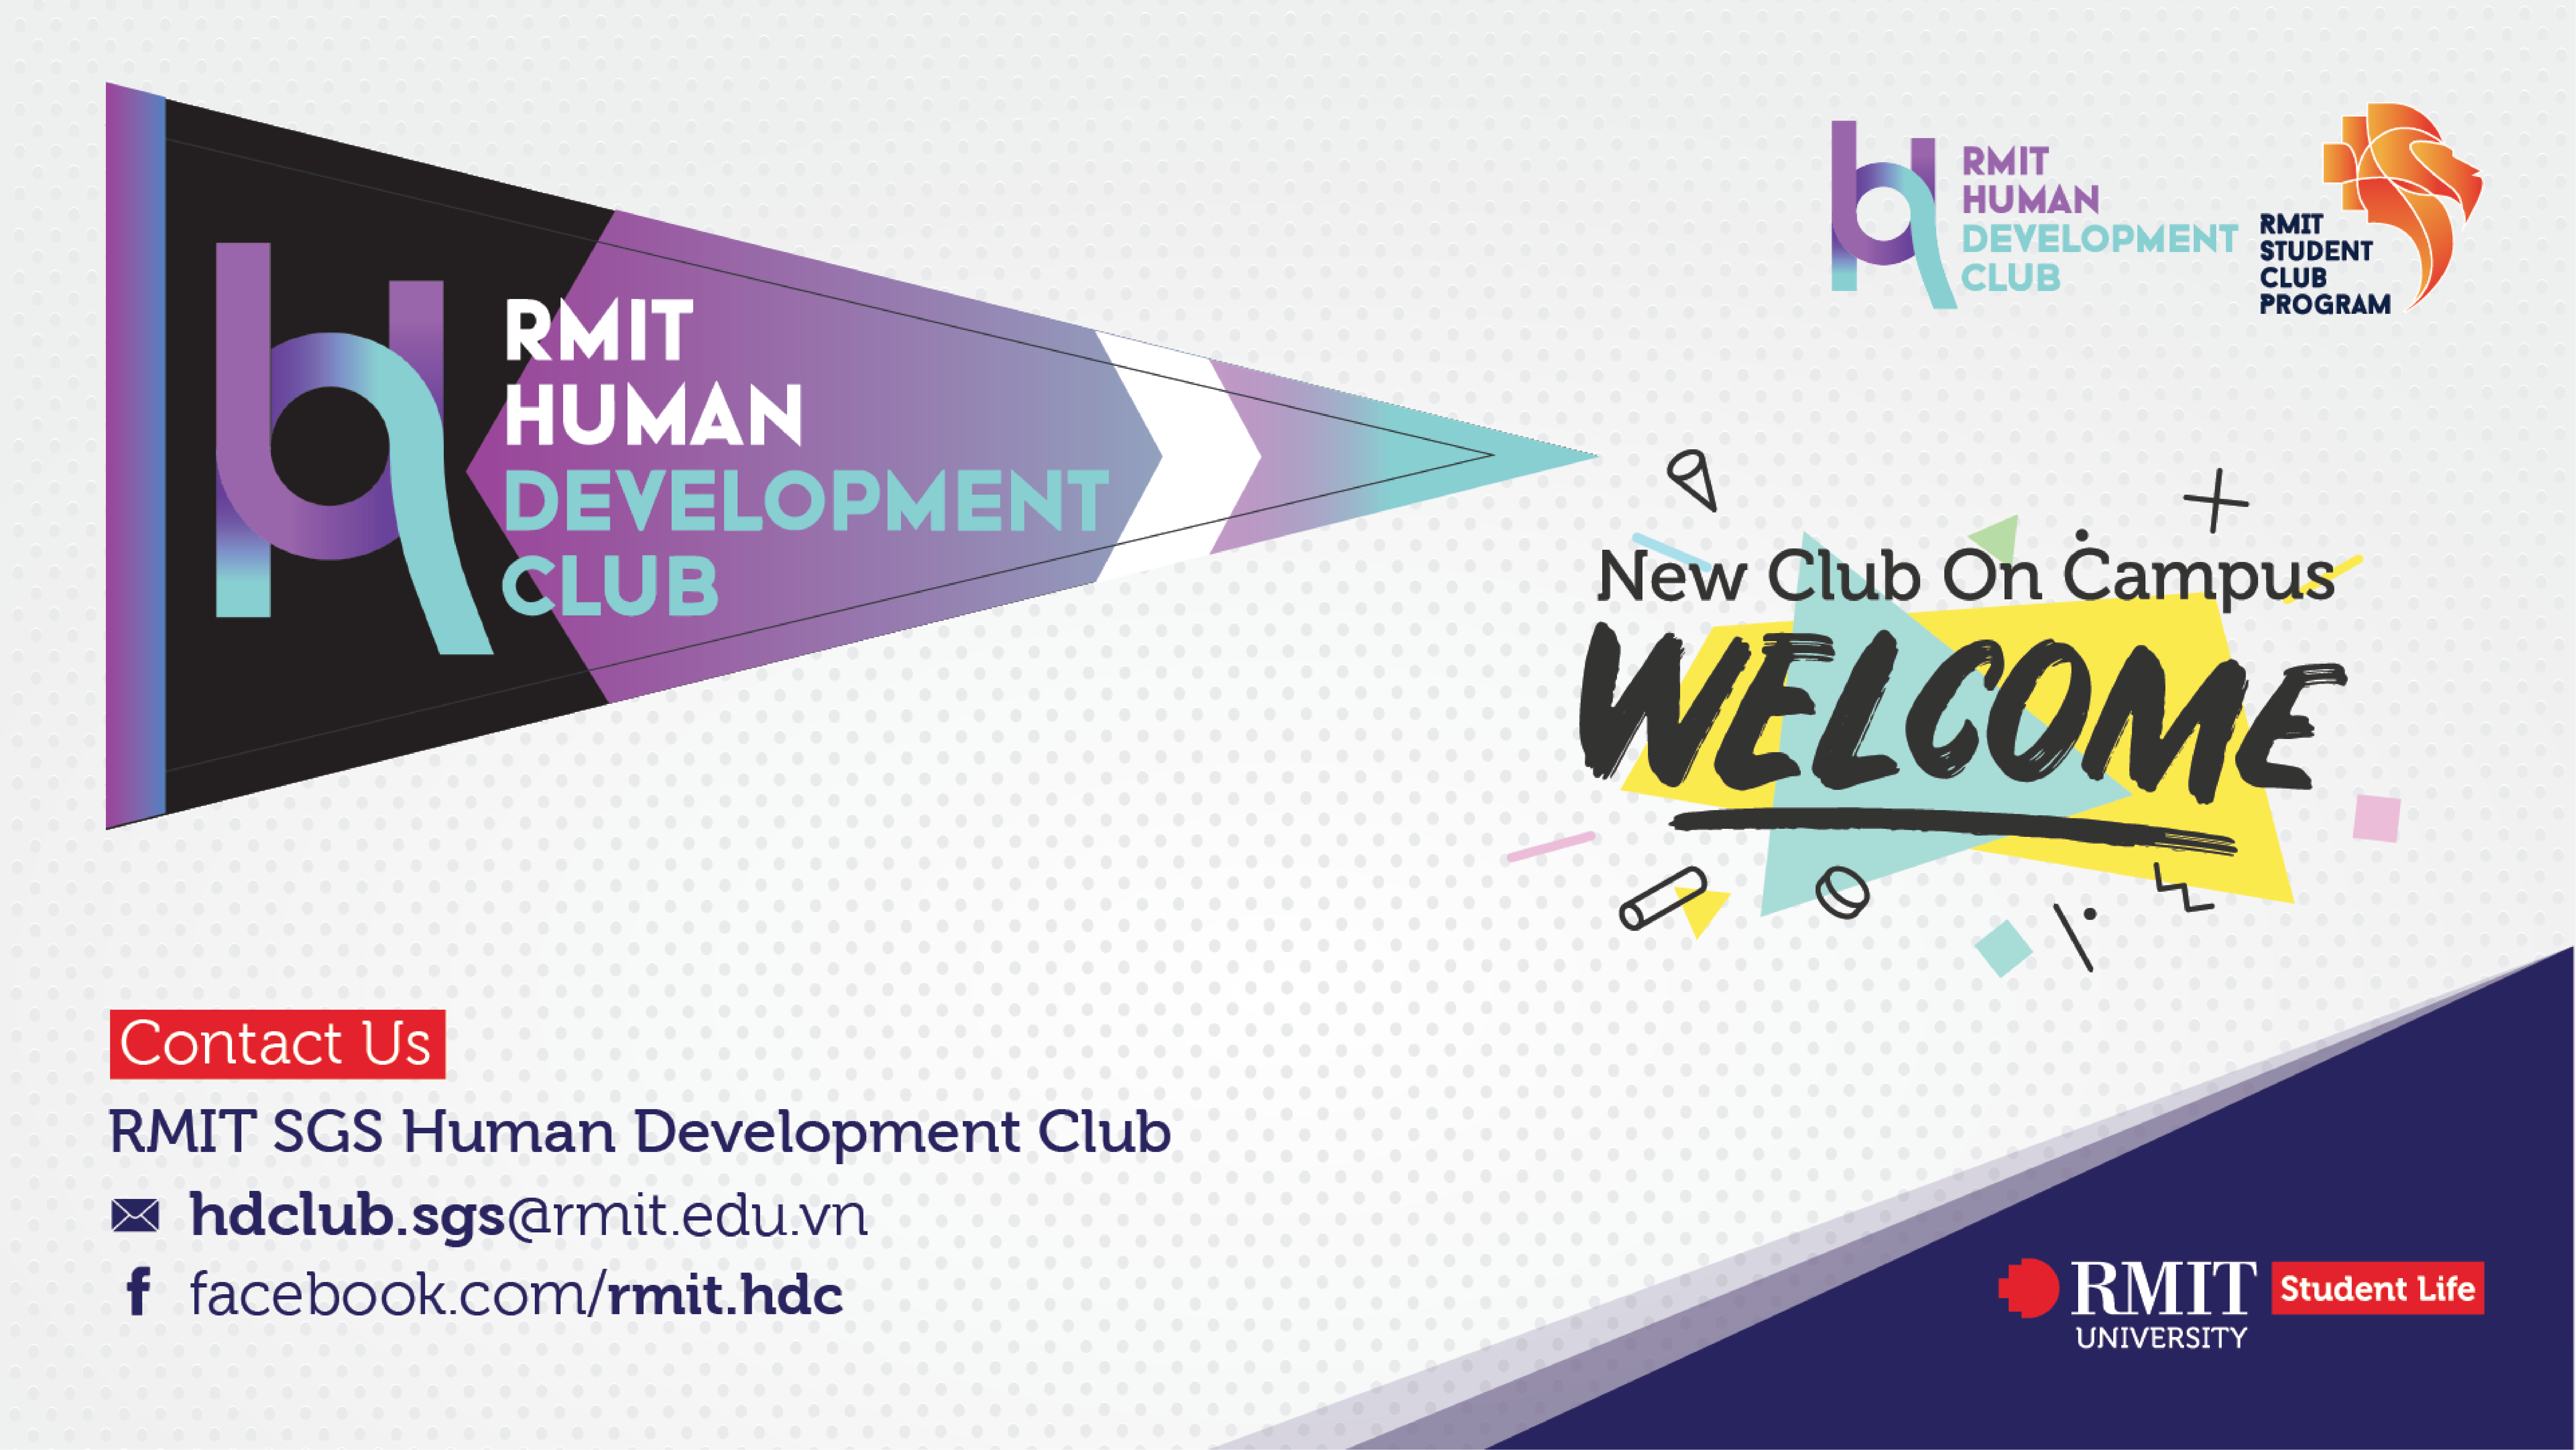 RMIT Human Development Club